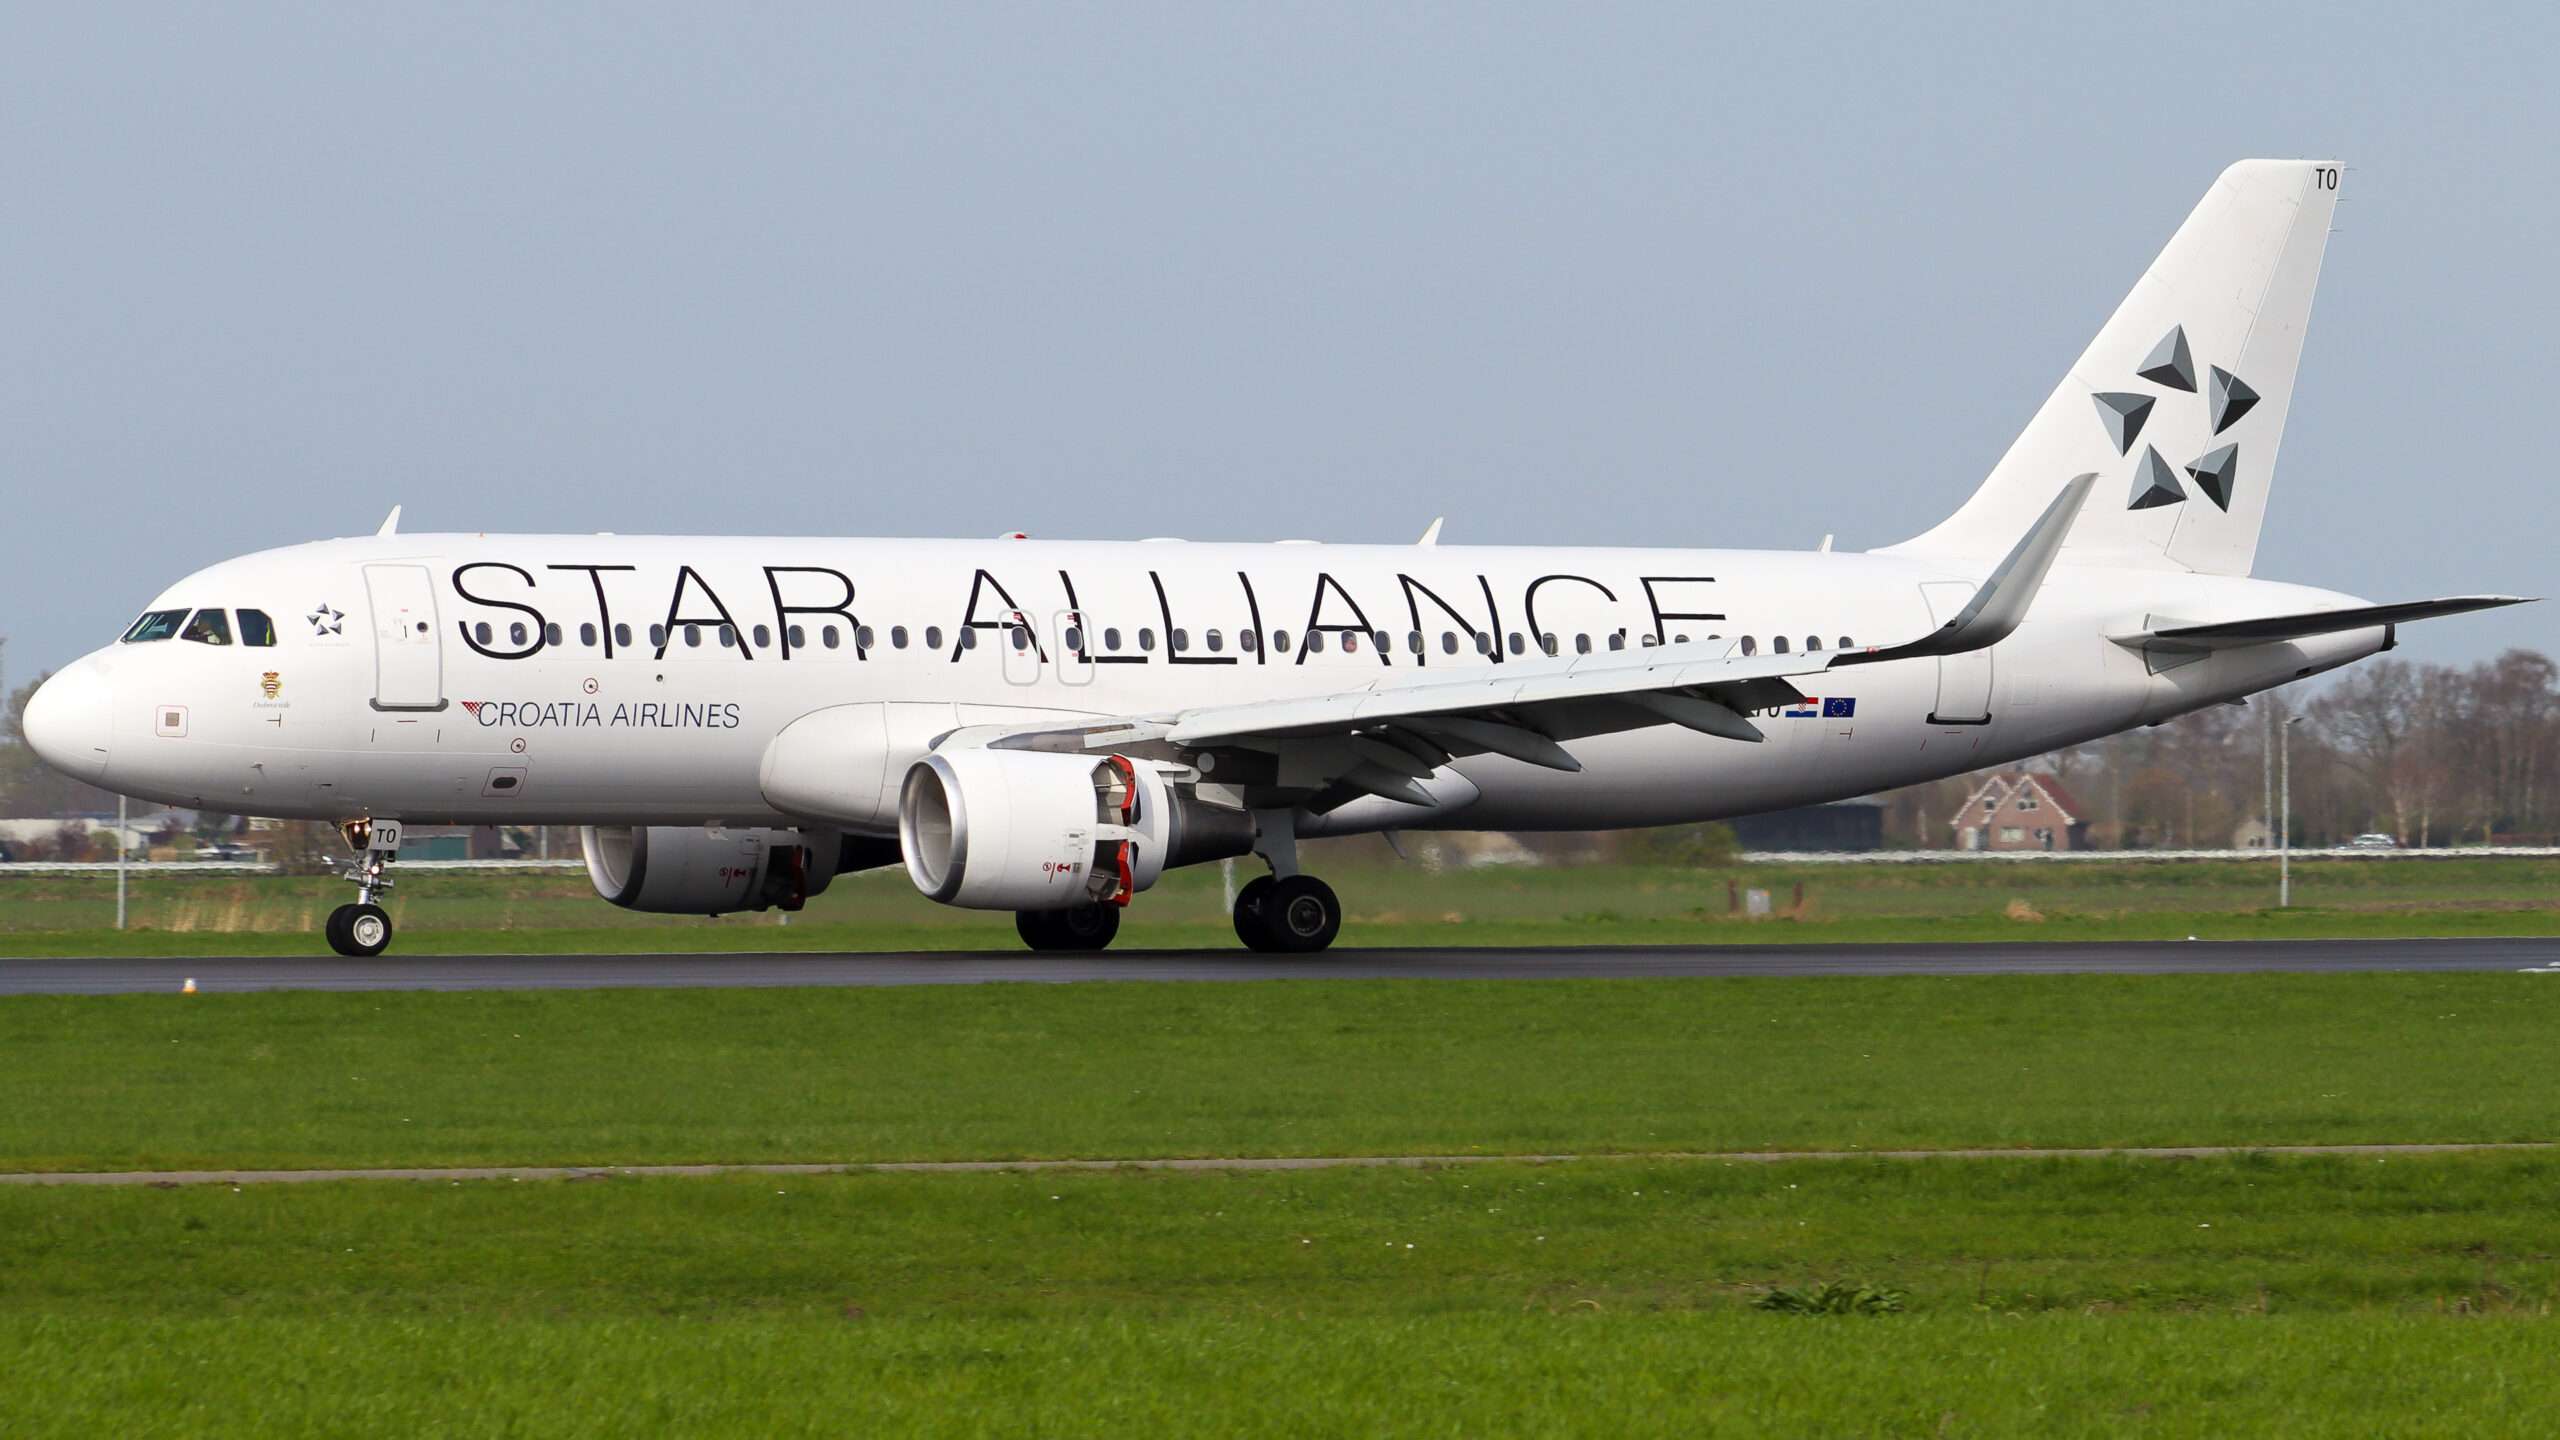 Star Alliance: World’s Best Airline Alliance